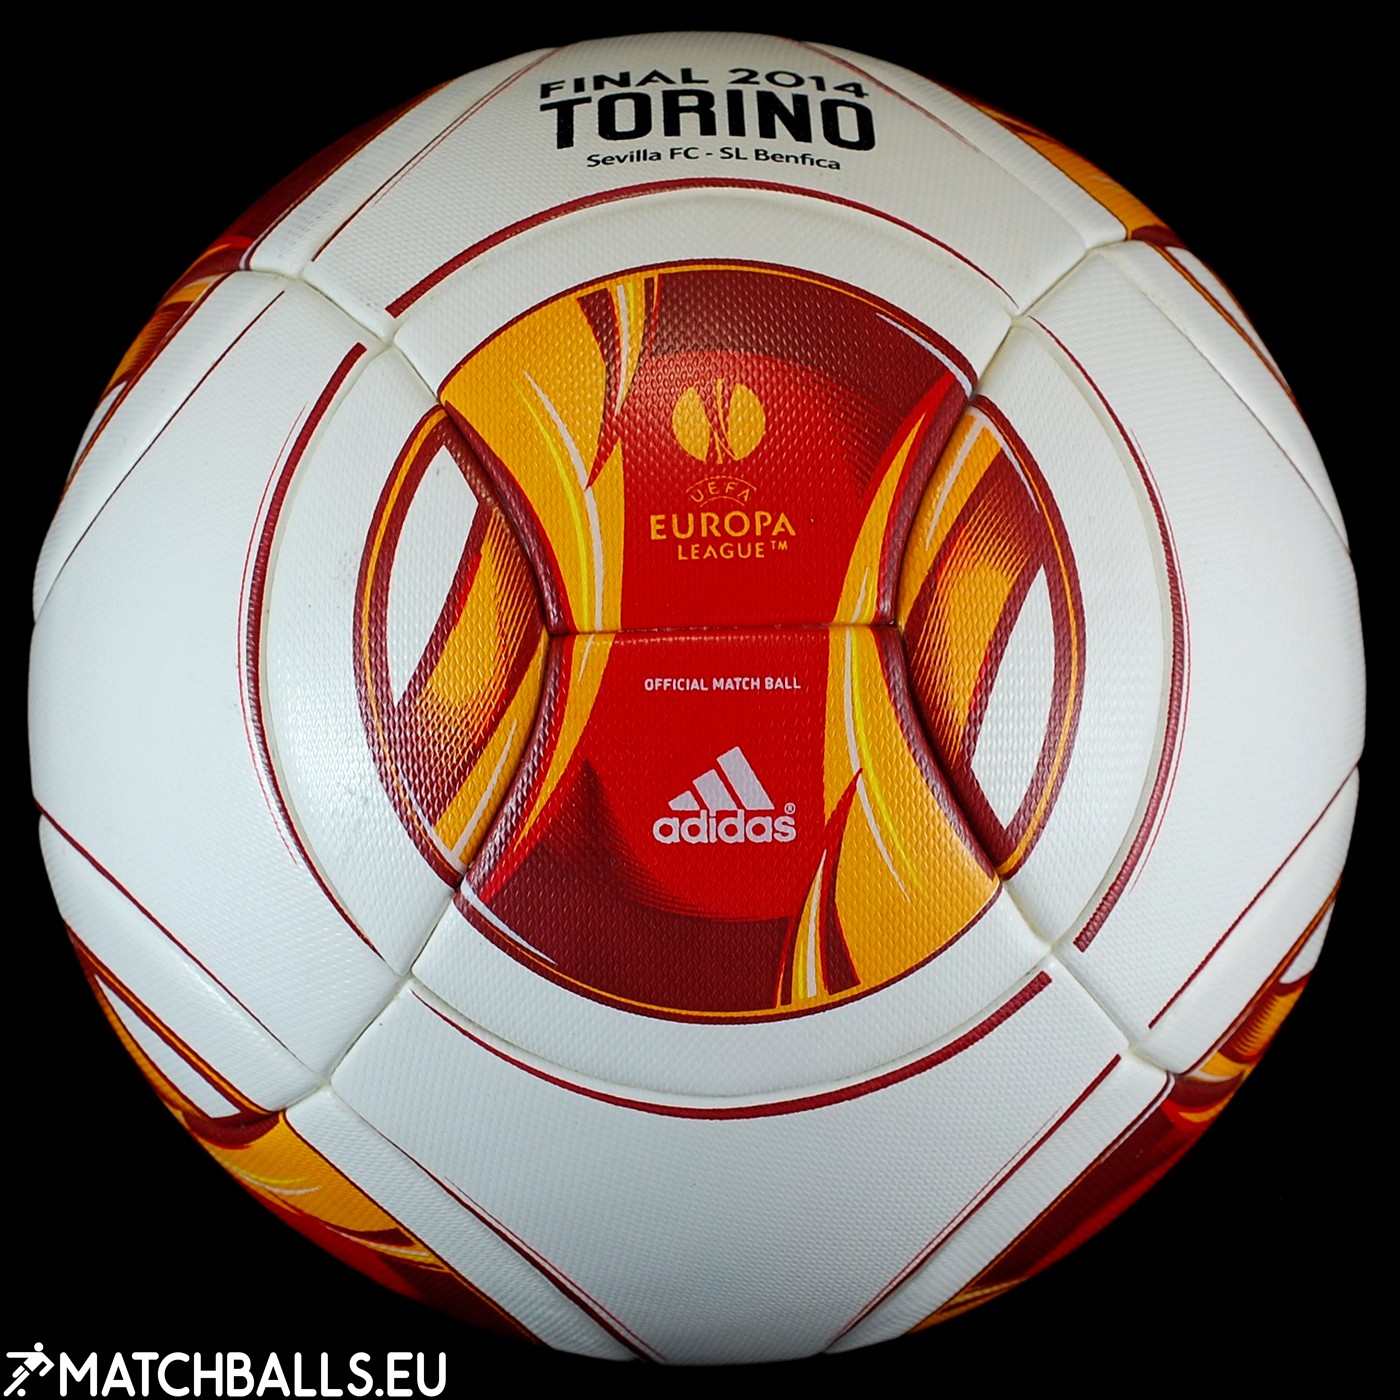 Adidas Torino 2014 Ball - Final Match (OMB) | matchballs.eu